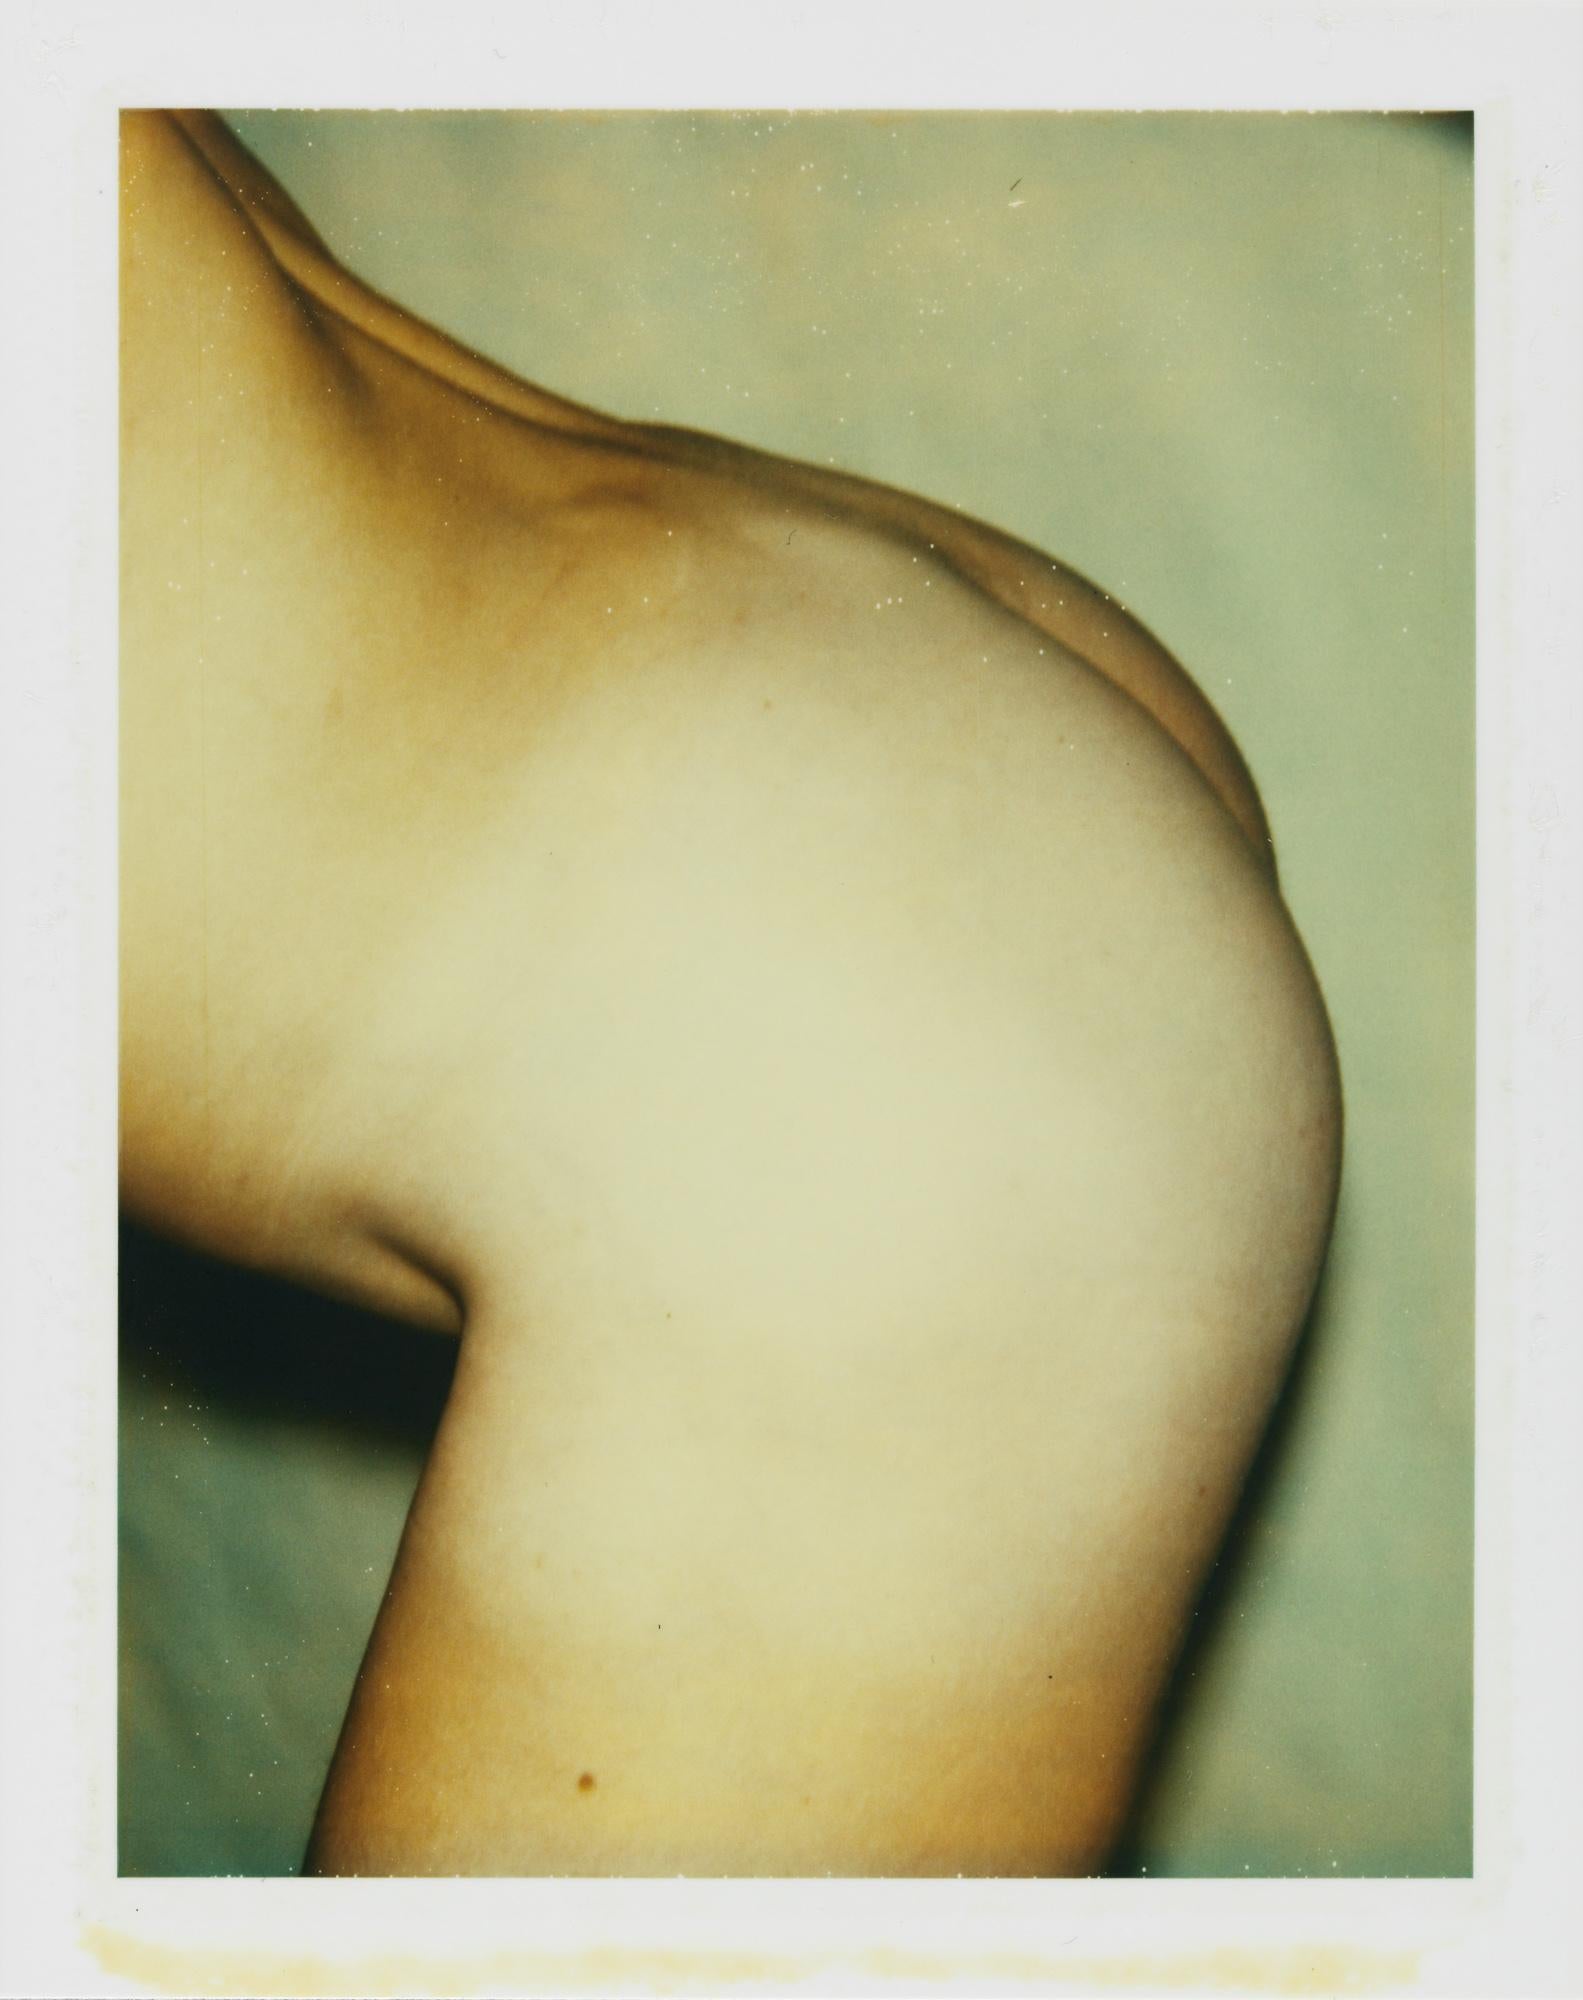 Color Polaroid 'Sex Parts and Torsos' by Andy Warhol